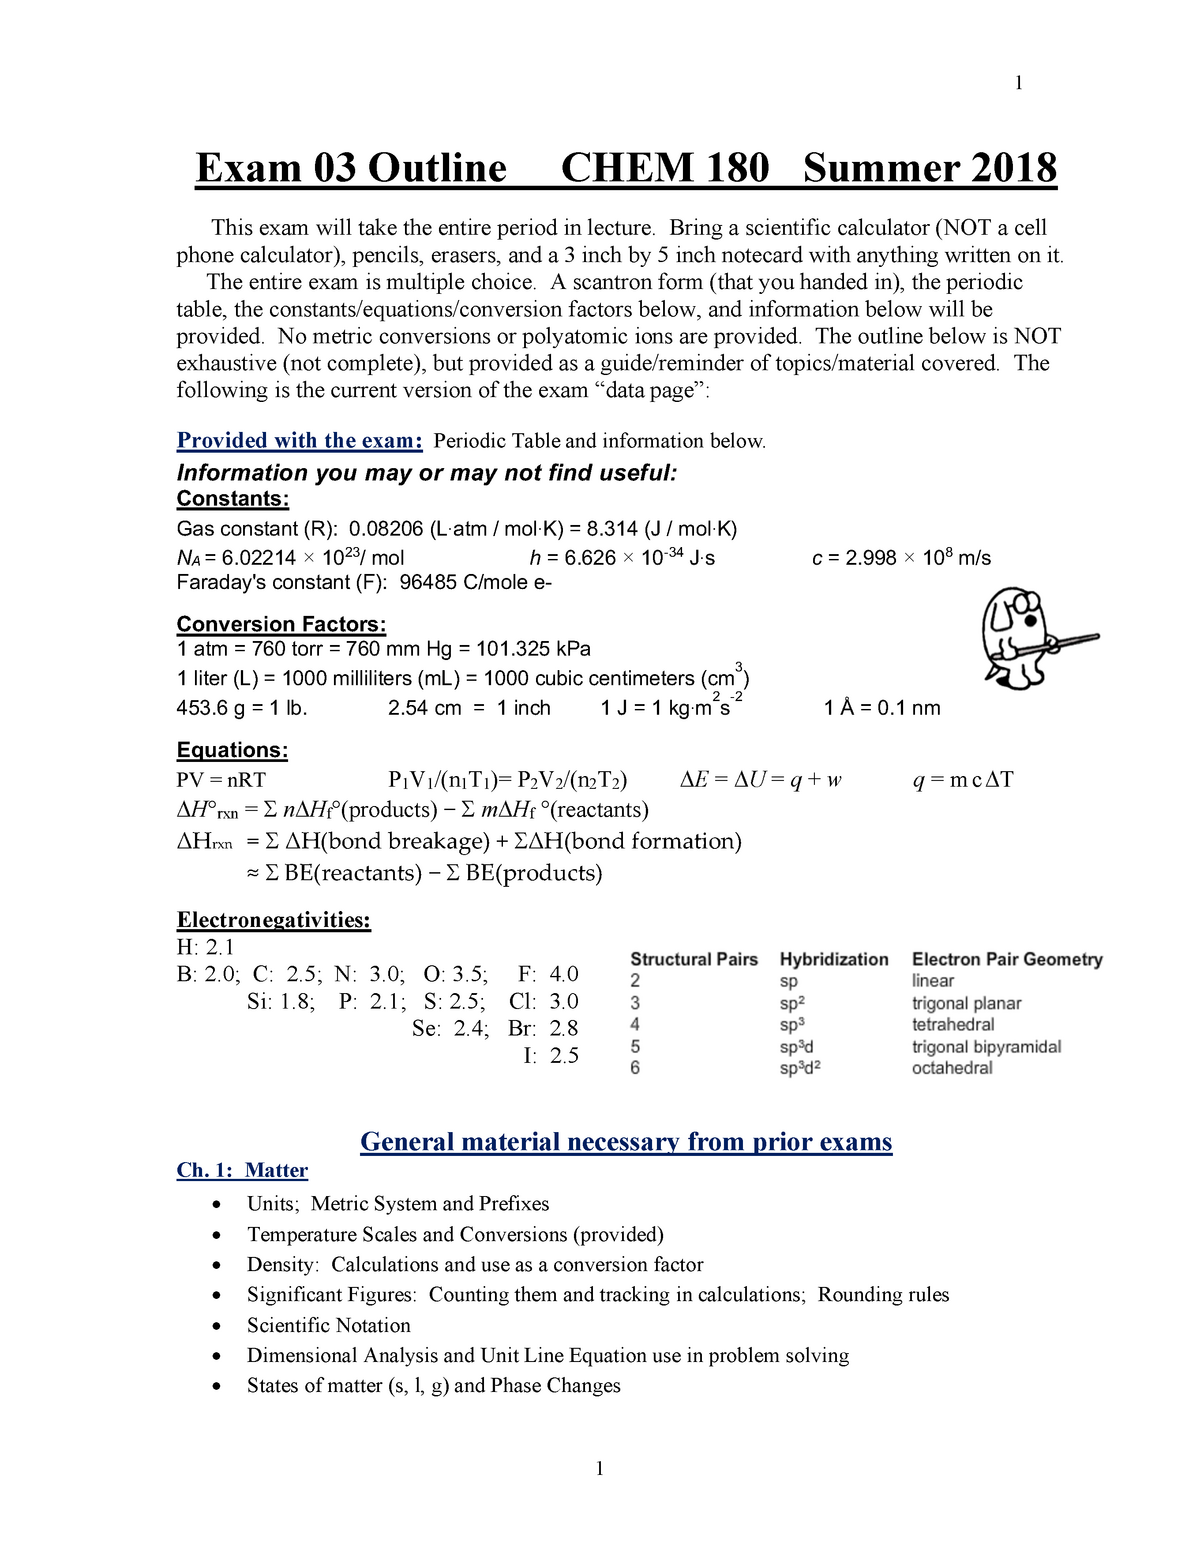 Final Exam 3 Review Chem A180 Occ Studocu